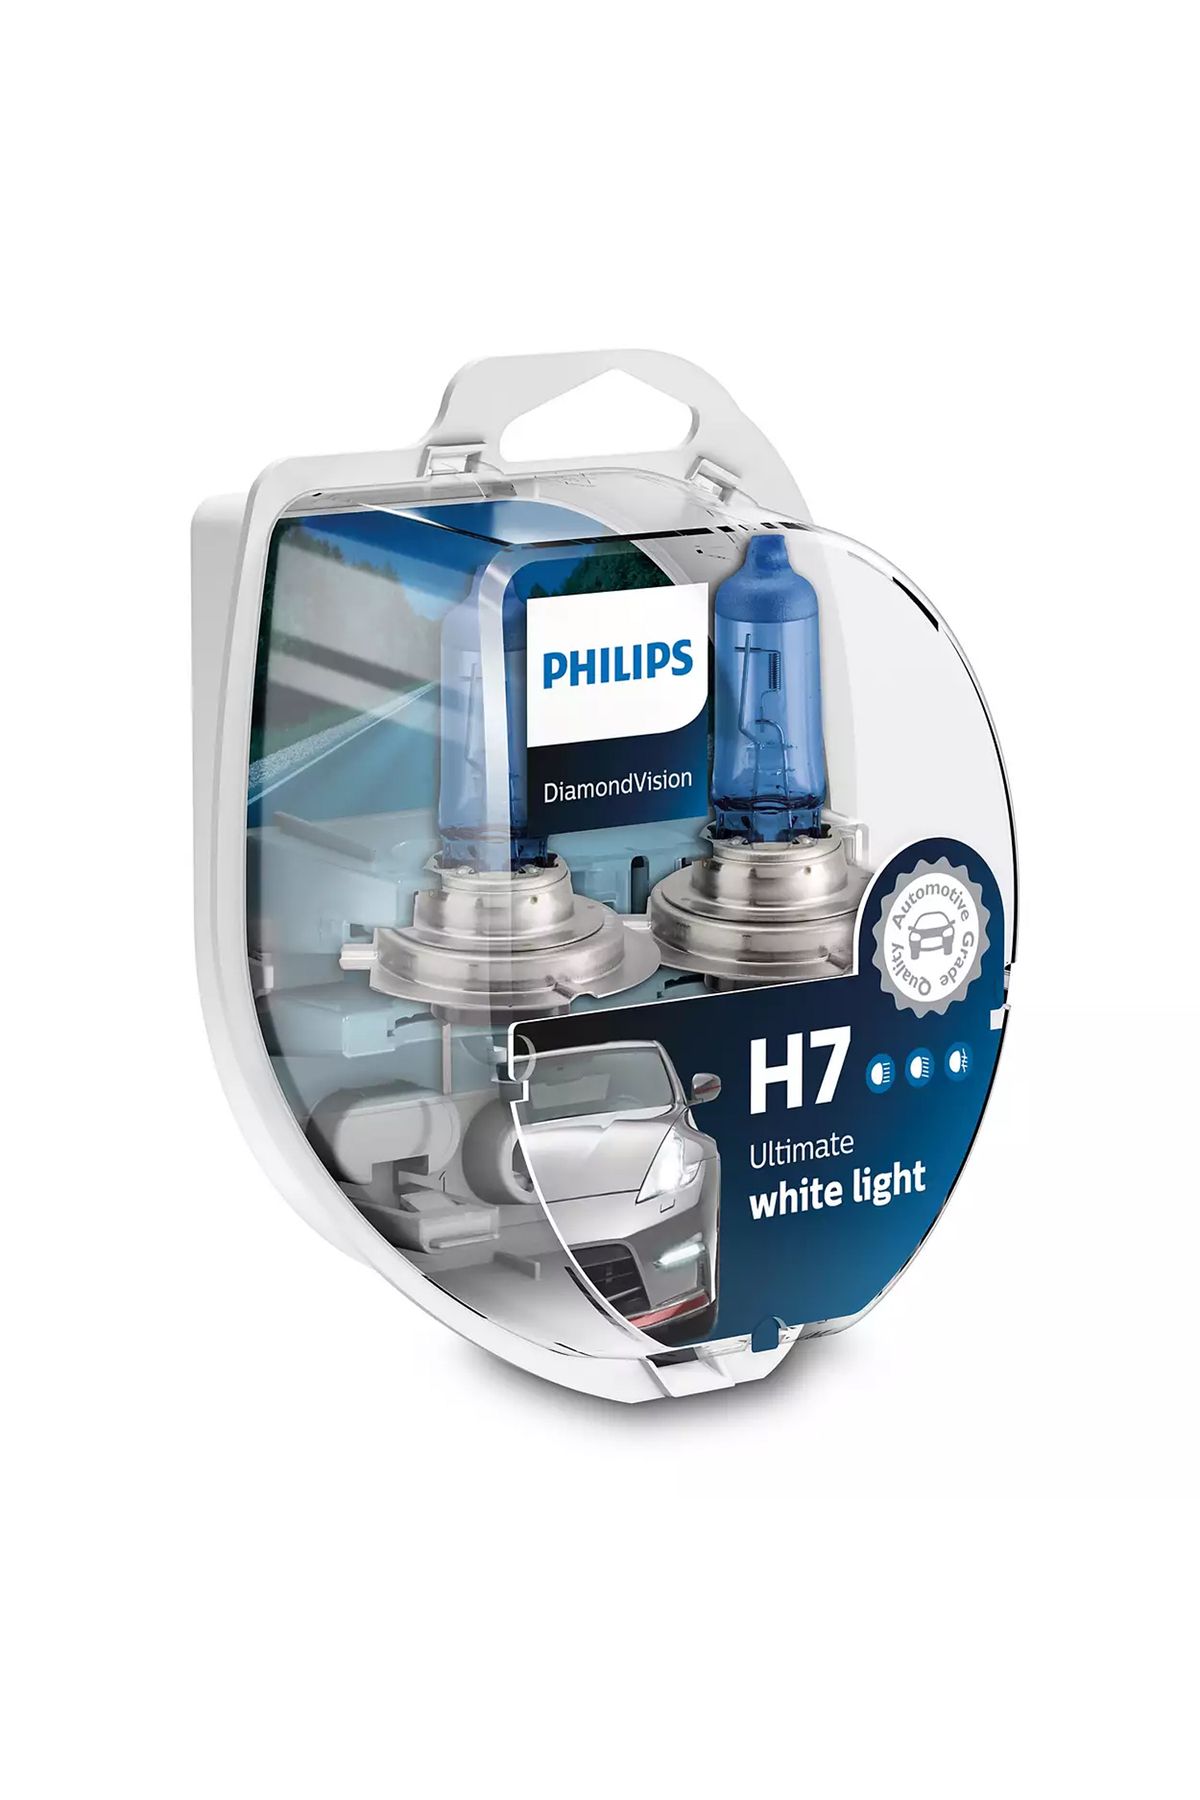 Philips H7 Diamond Vision Ultimate Parlak Beyaz Işık 5000k